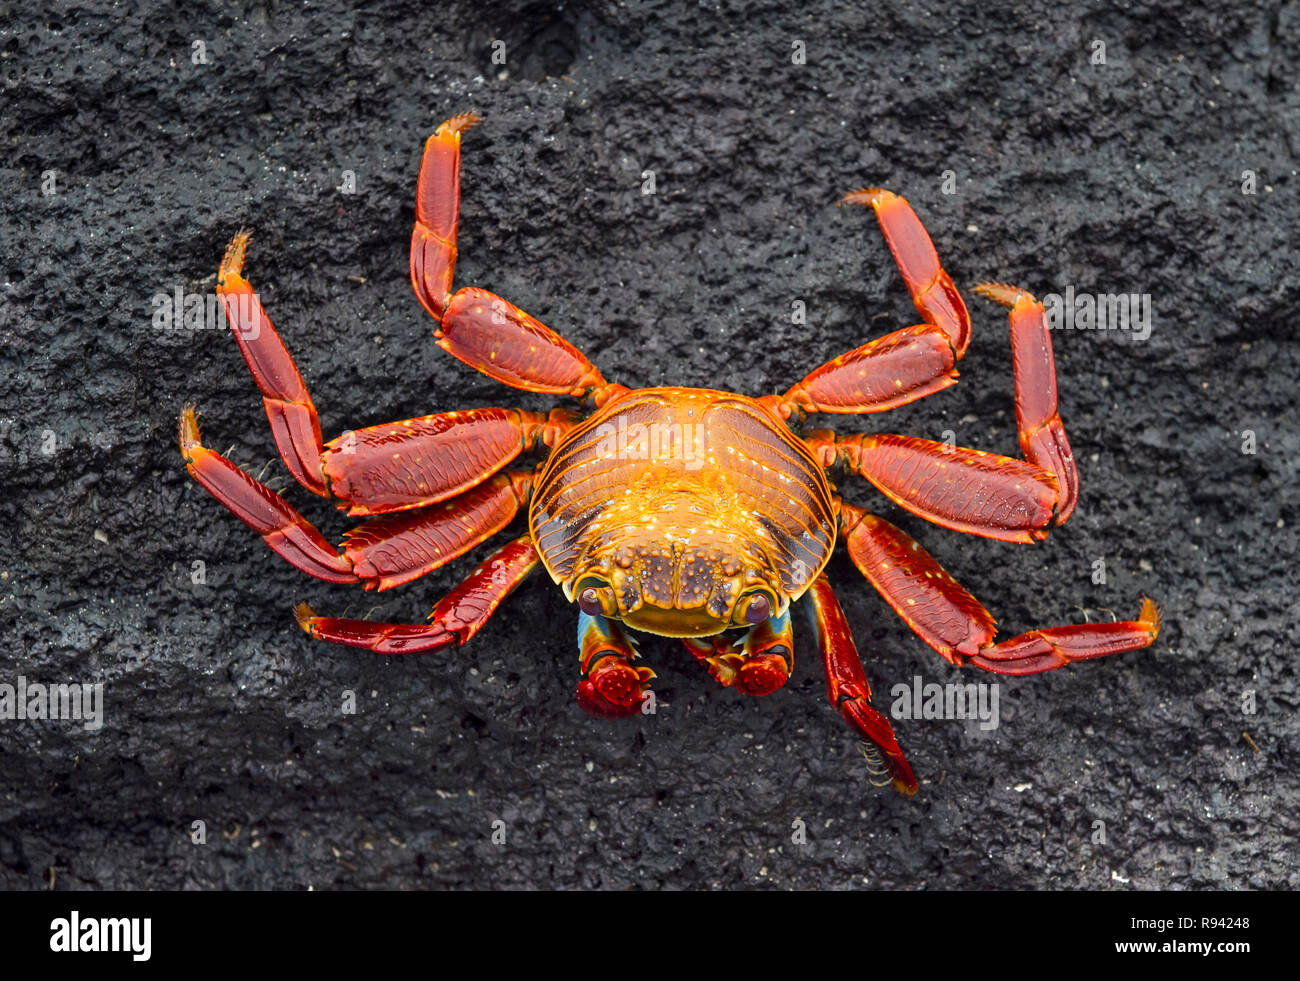 Sally Lightfoot Crab (Grapsus grapsus), Marsh crabs family (Grapsidae), Isabela Island, Galapagos Islands, Ecuador Stock Photo